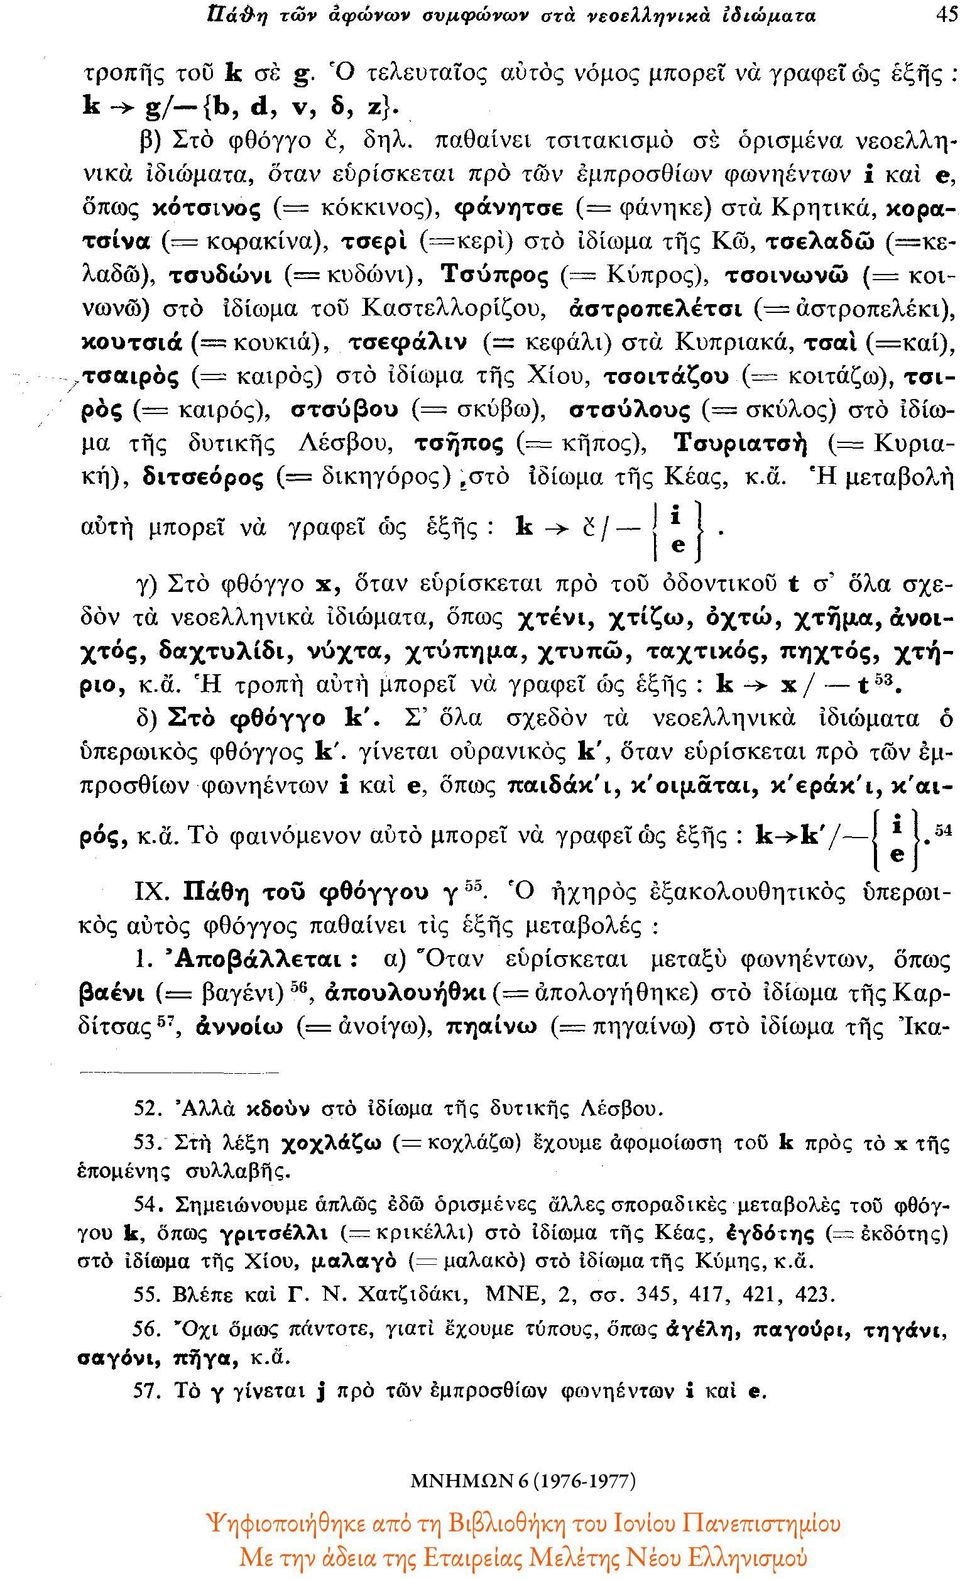 (=κερί) στο ιδίωμα της Κω, τσελαδώ (=κελαδώ), τσυδώνι (= κυδώνι), Τσύπρος ( Κύπρος), τσοινωνώ (= κοινωνώ) στο ιδίωμα του Καστελλορίζου, αστροπελέτσι (= αστροπελέκι), κουτσιά (= κουκιά), τσεφάλιν (=